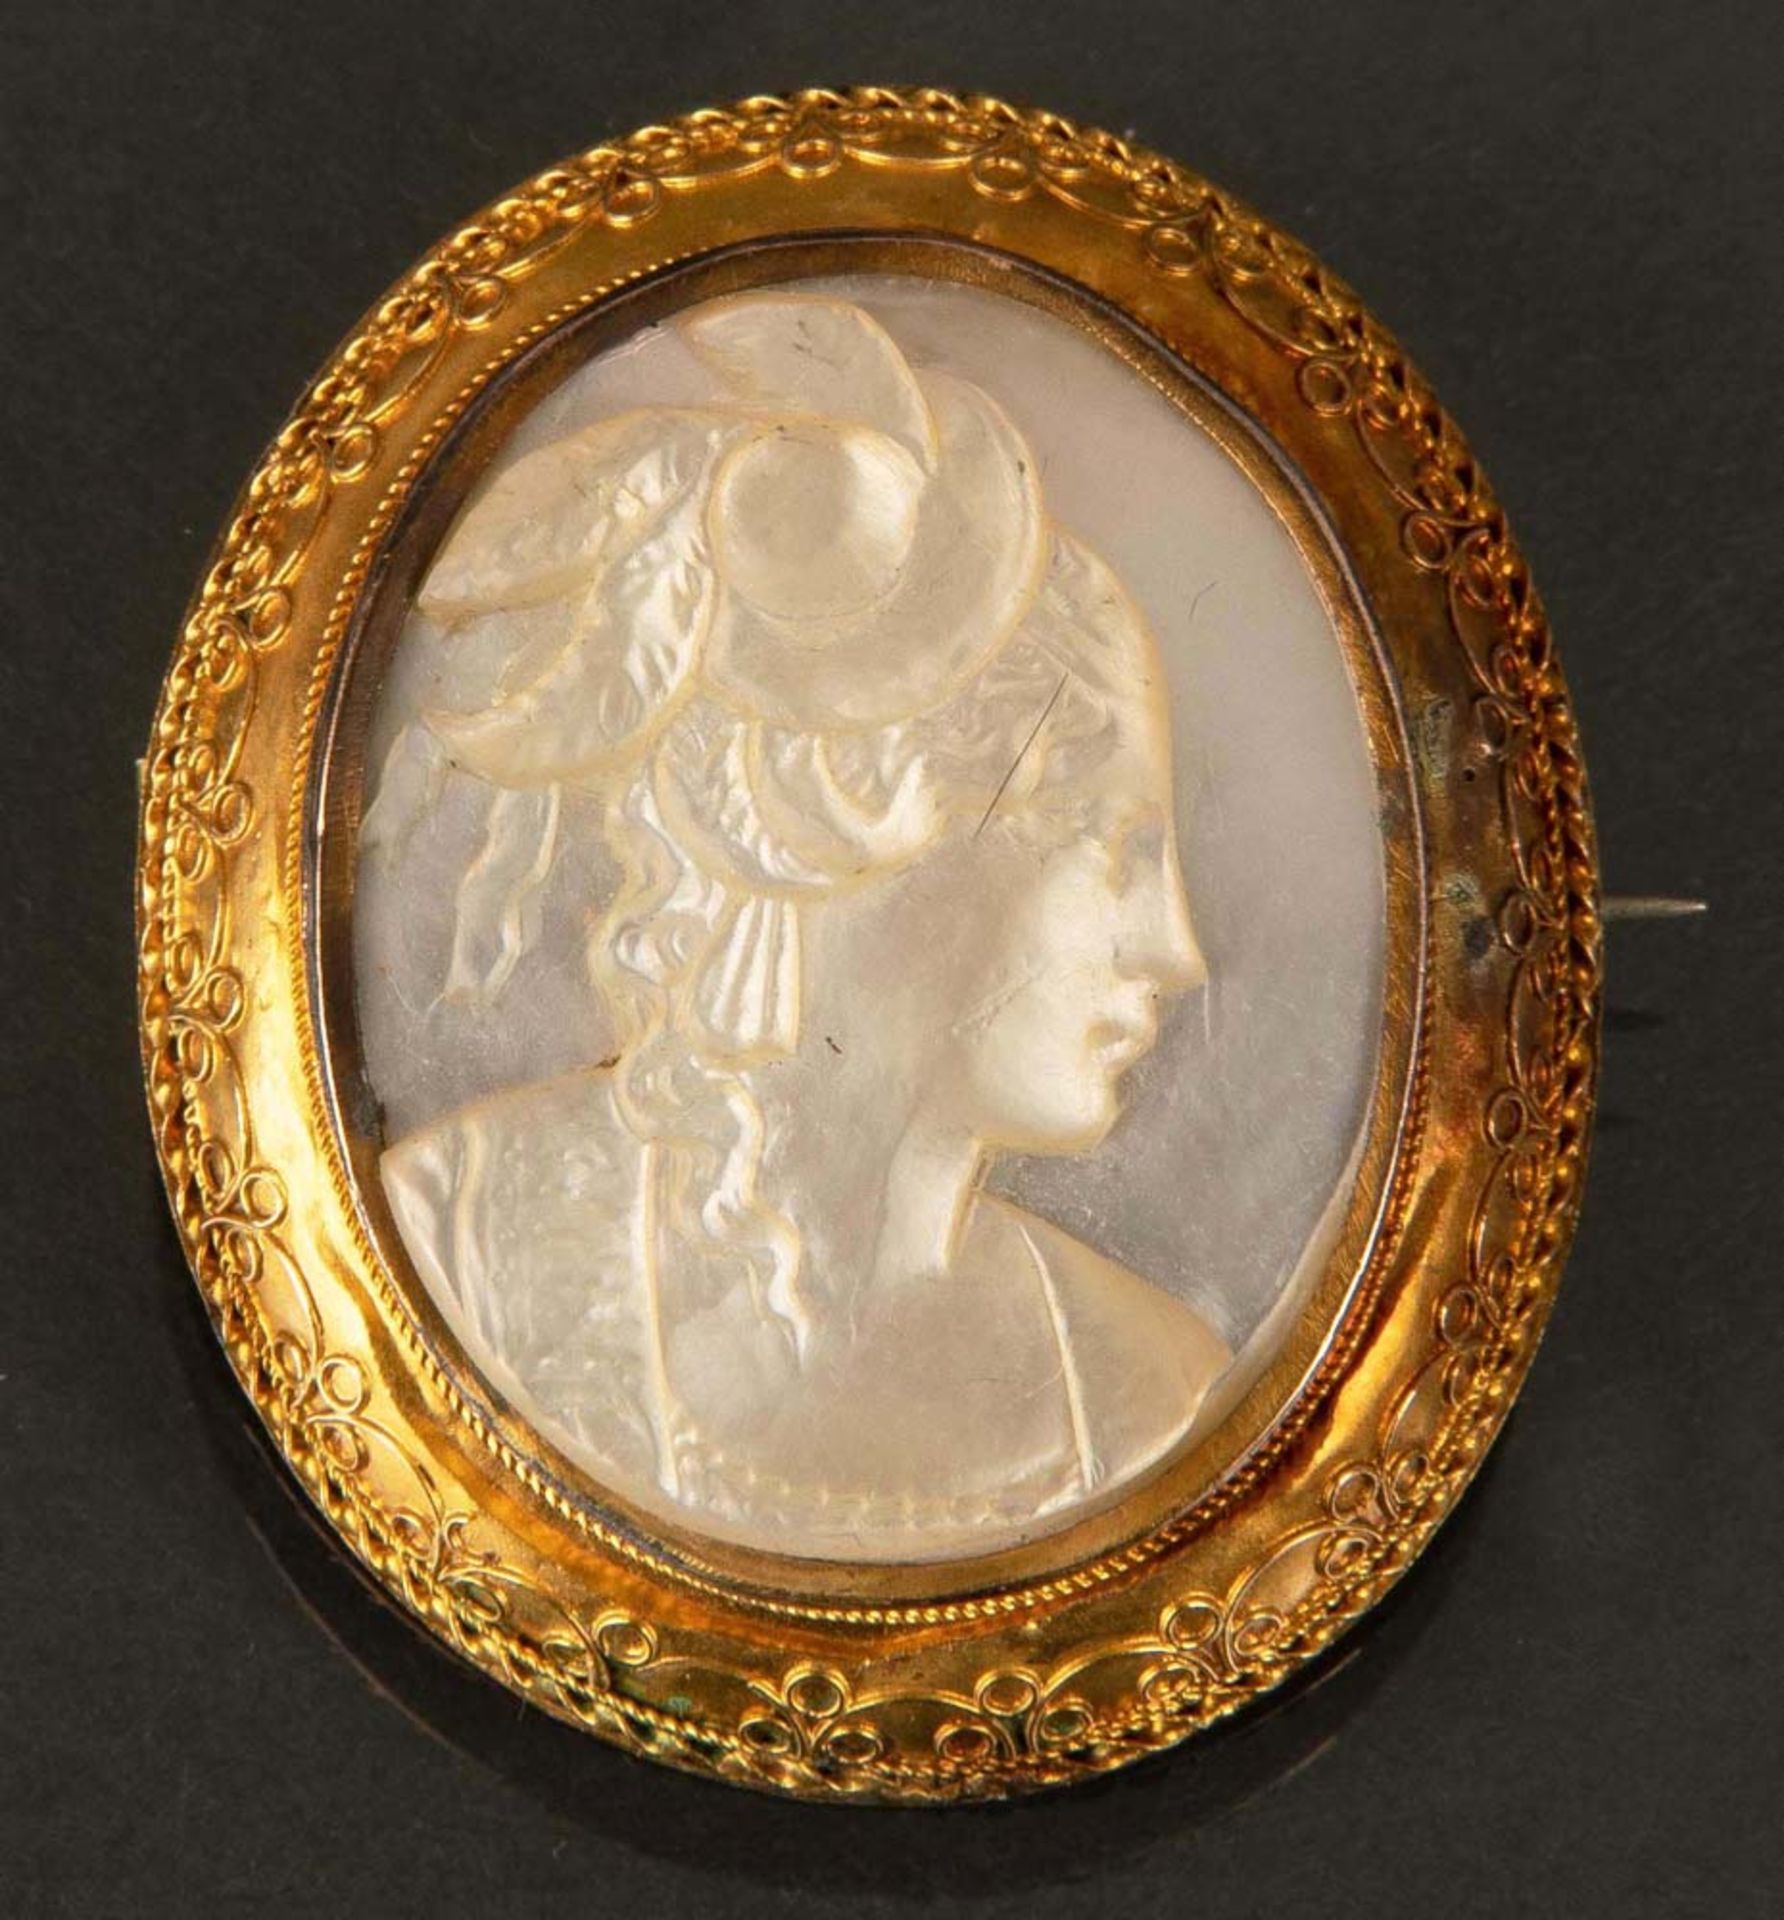 Ovale Brosche. 14 ct Gelbgoldfassung, besetzt mit Perlmutt mit geschnittenem Frauenkopf, 3,7 x 3,1